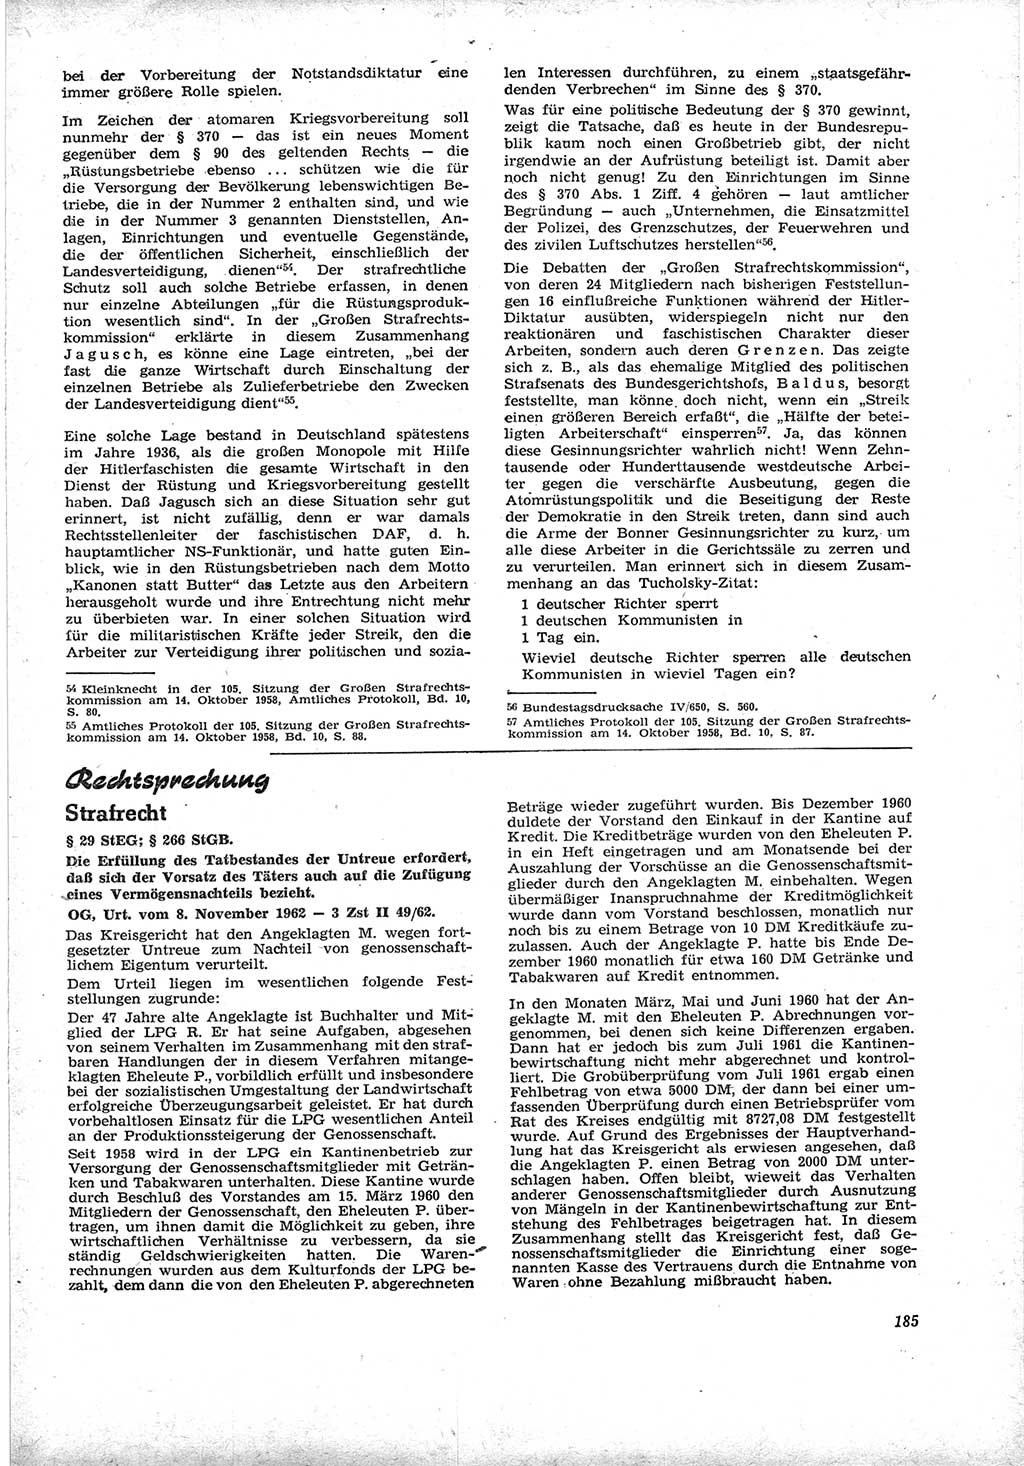 Neue Justiz (NJ), Zeitschrift für Recht und Rechtswissenschaft [Deutsche Demokratische Republik (DDR)], 17. Jahrgang 1963, Seite 185 (NJ DDR 1963, S. 185)